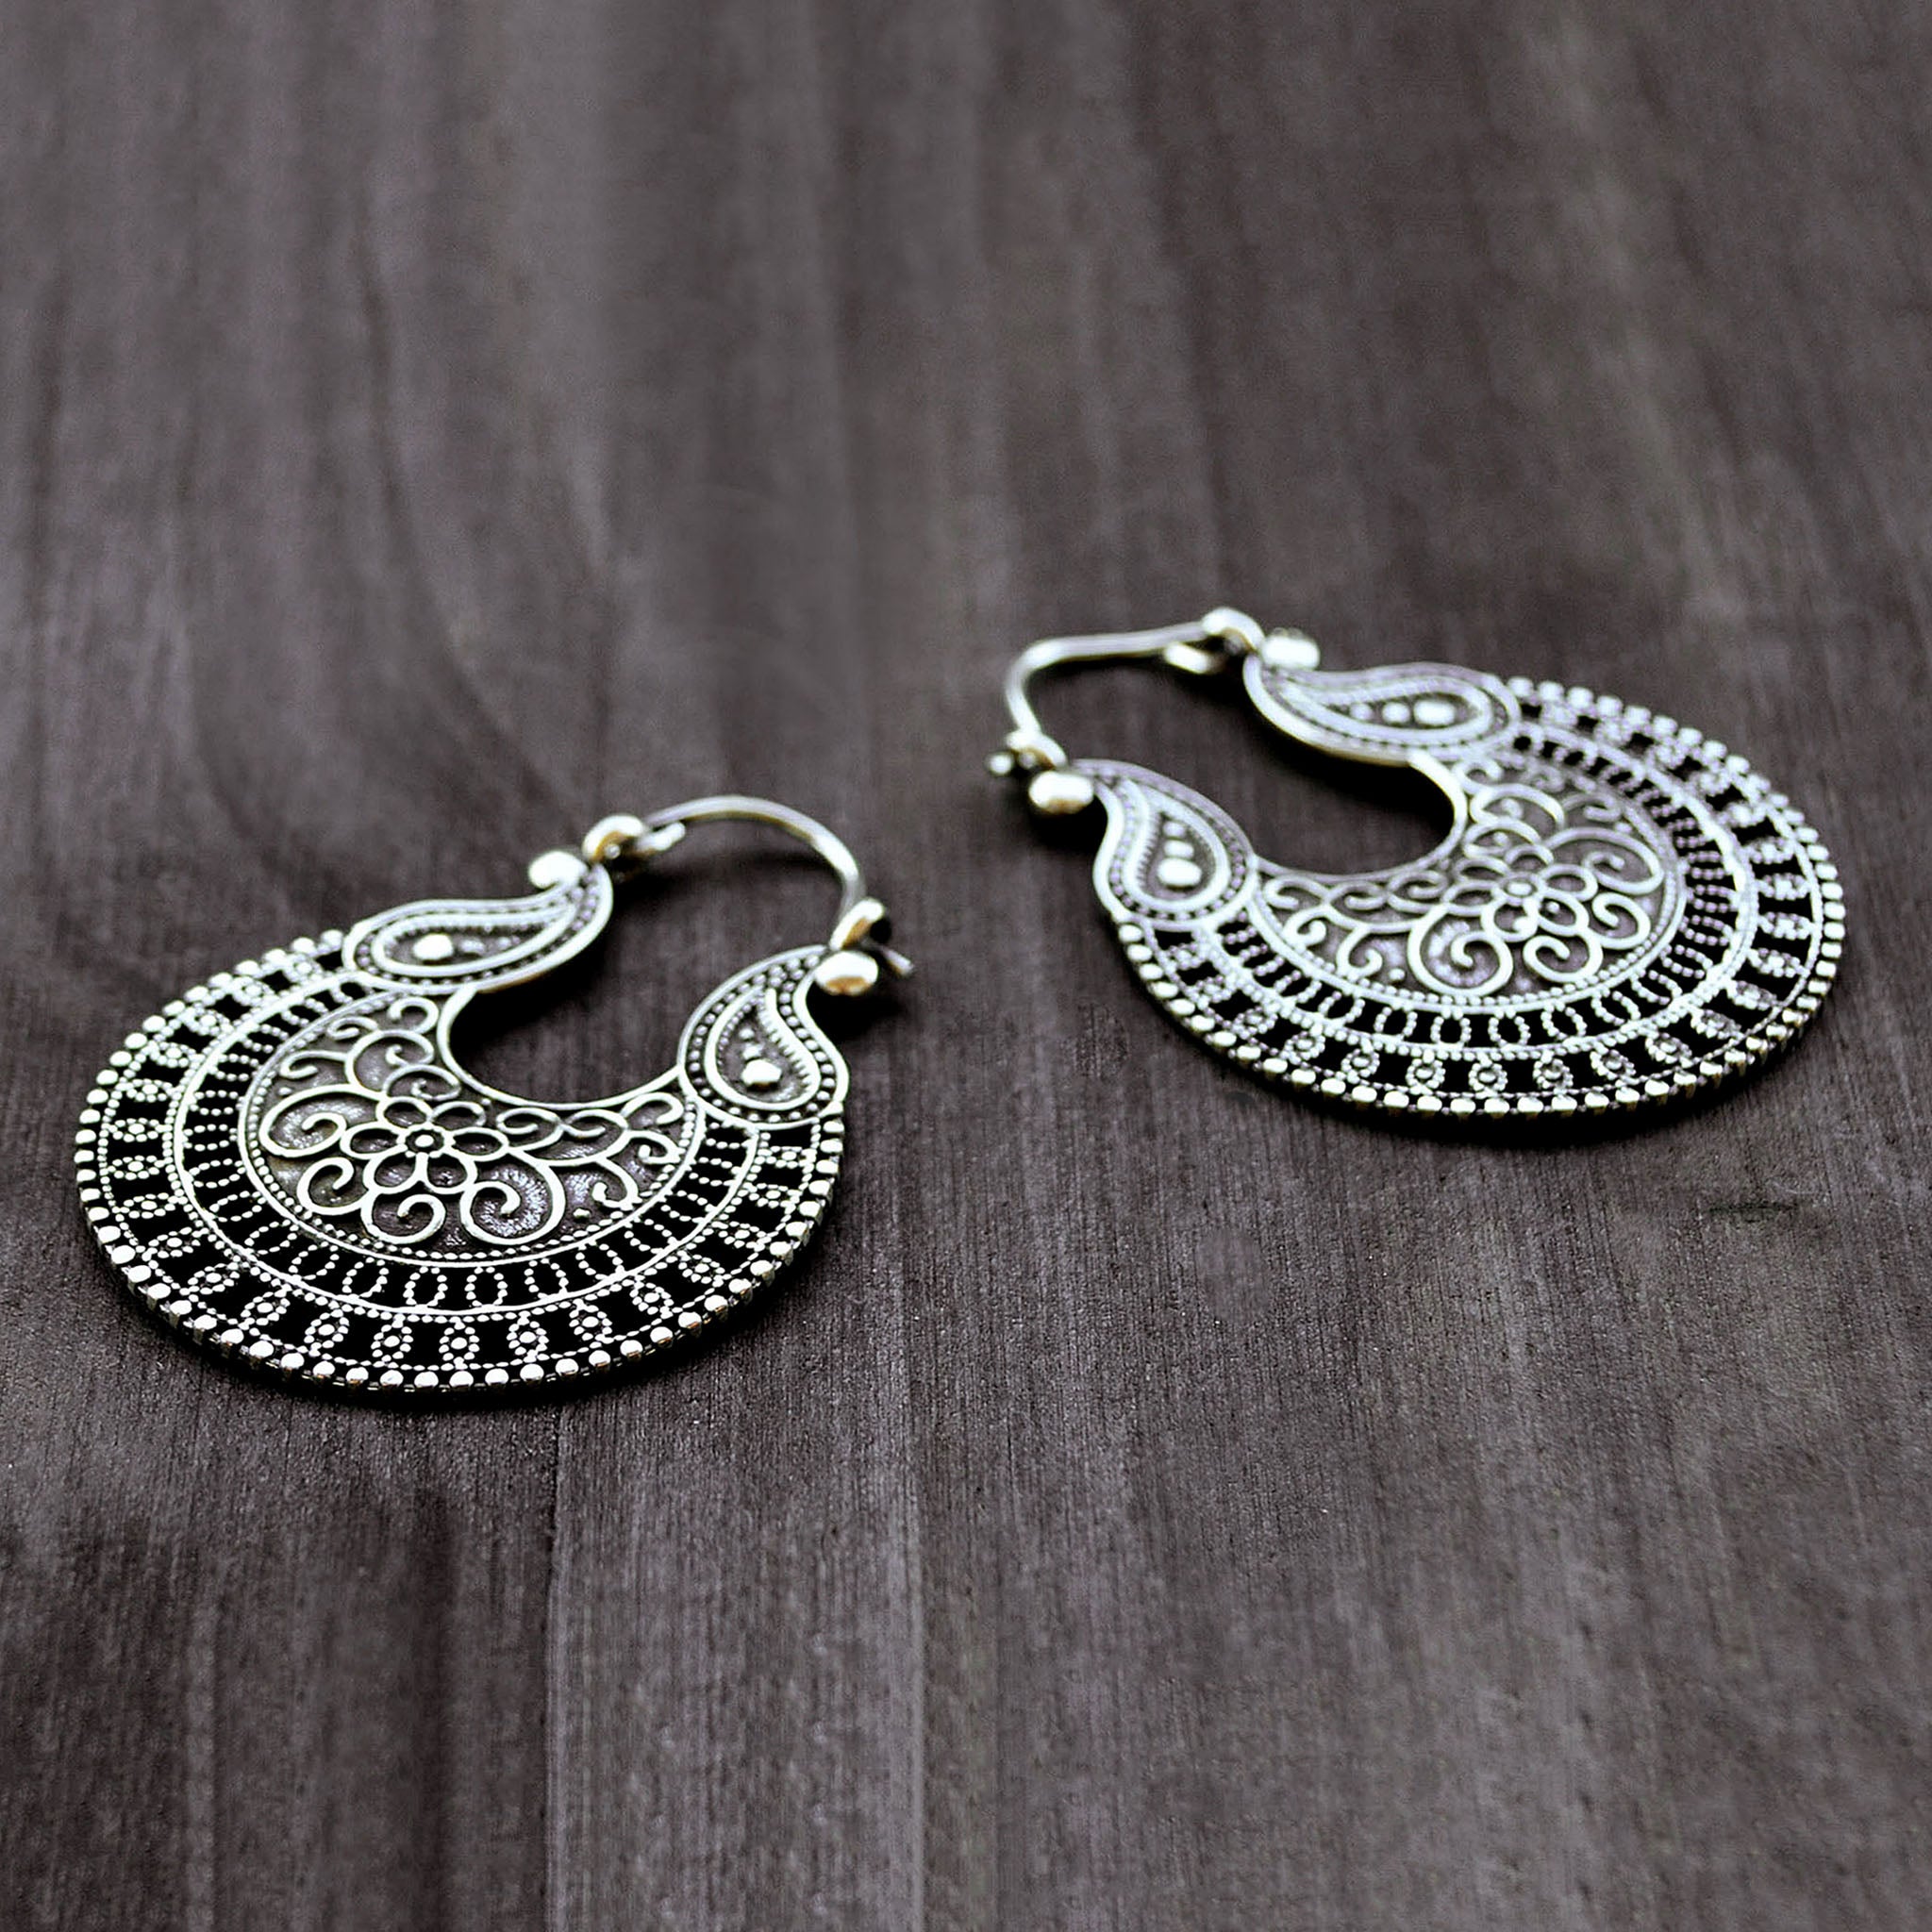 Silver ornate earrings